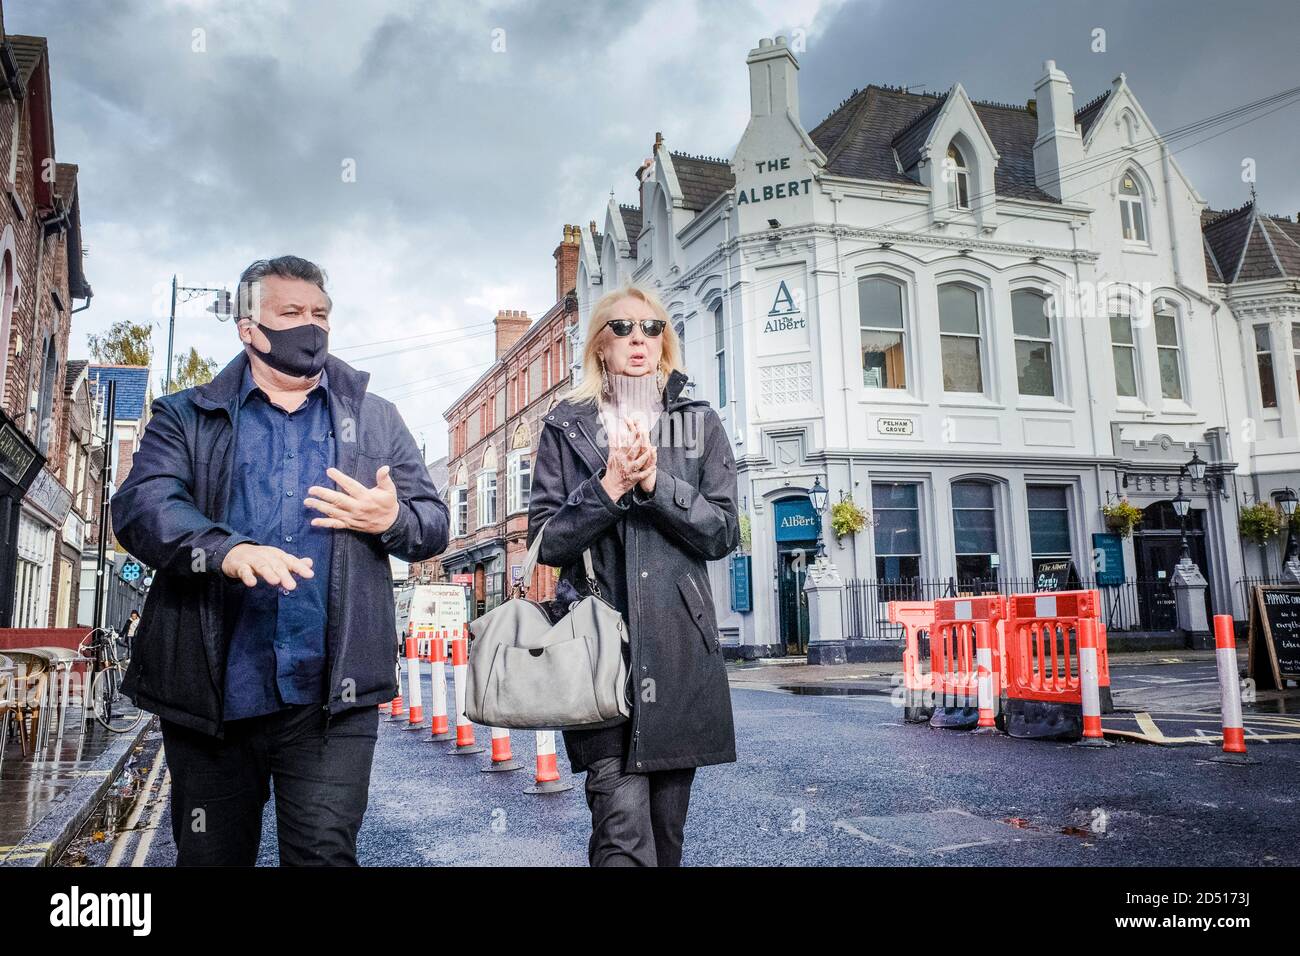 Verrouillage du coronavirus Liverpool Covid-19. Un homme masqué et une femme non masquée se balayant les mains à Liverpool, passez devant un pub et un bar. Banque D'Images